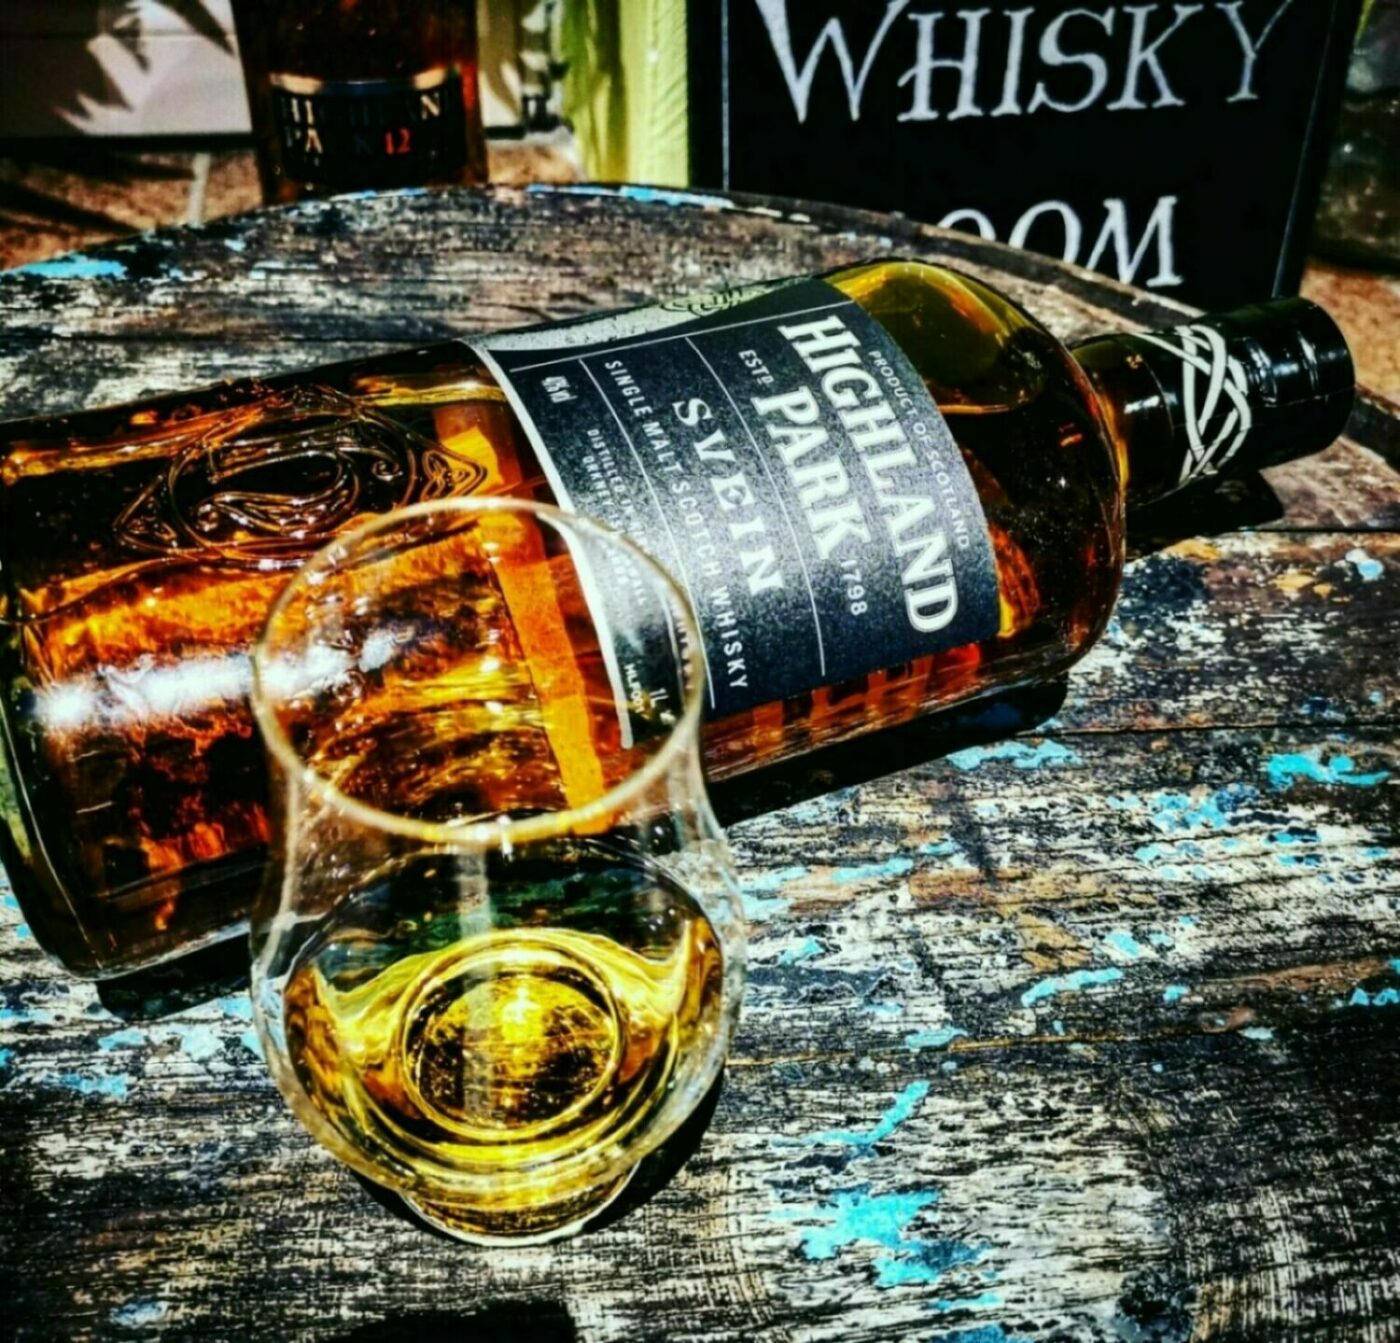 Highland Park Single Malt Scotch Whisky